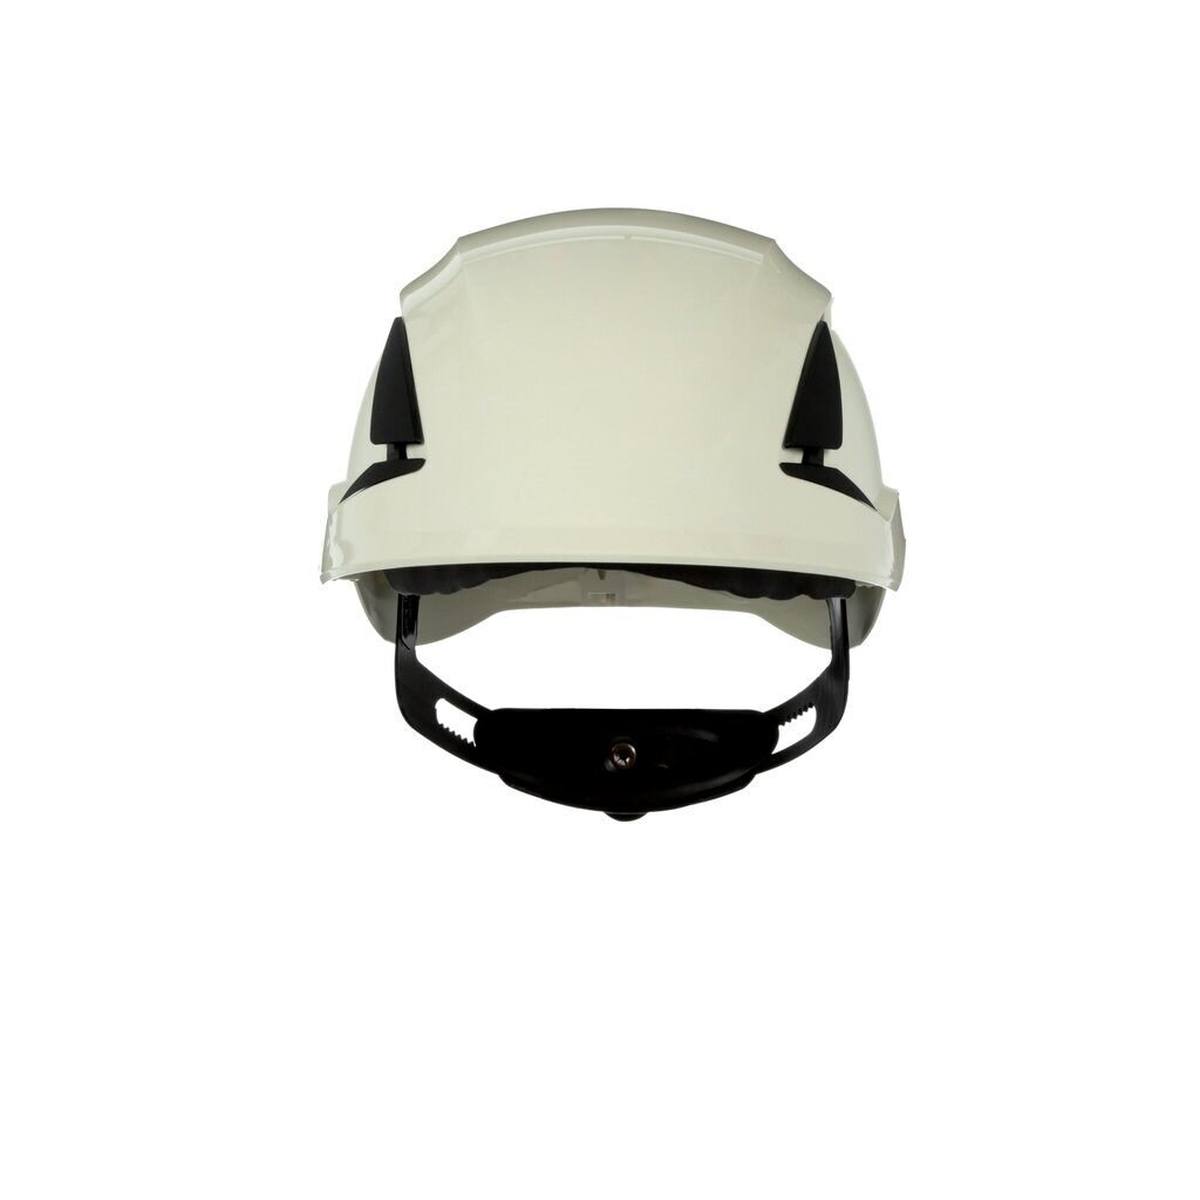 3M SecureFit casque de protection, X5504V-CE, vert, ventilé, CE